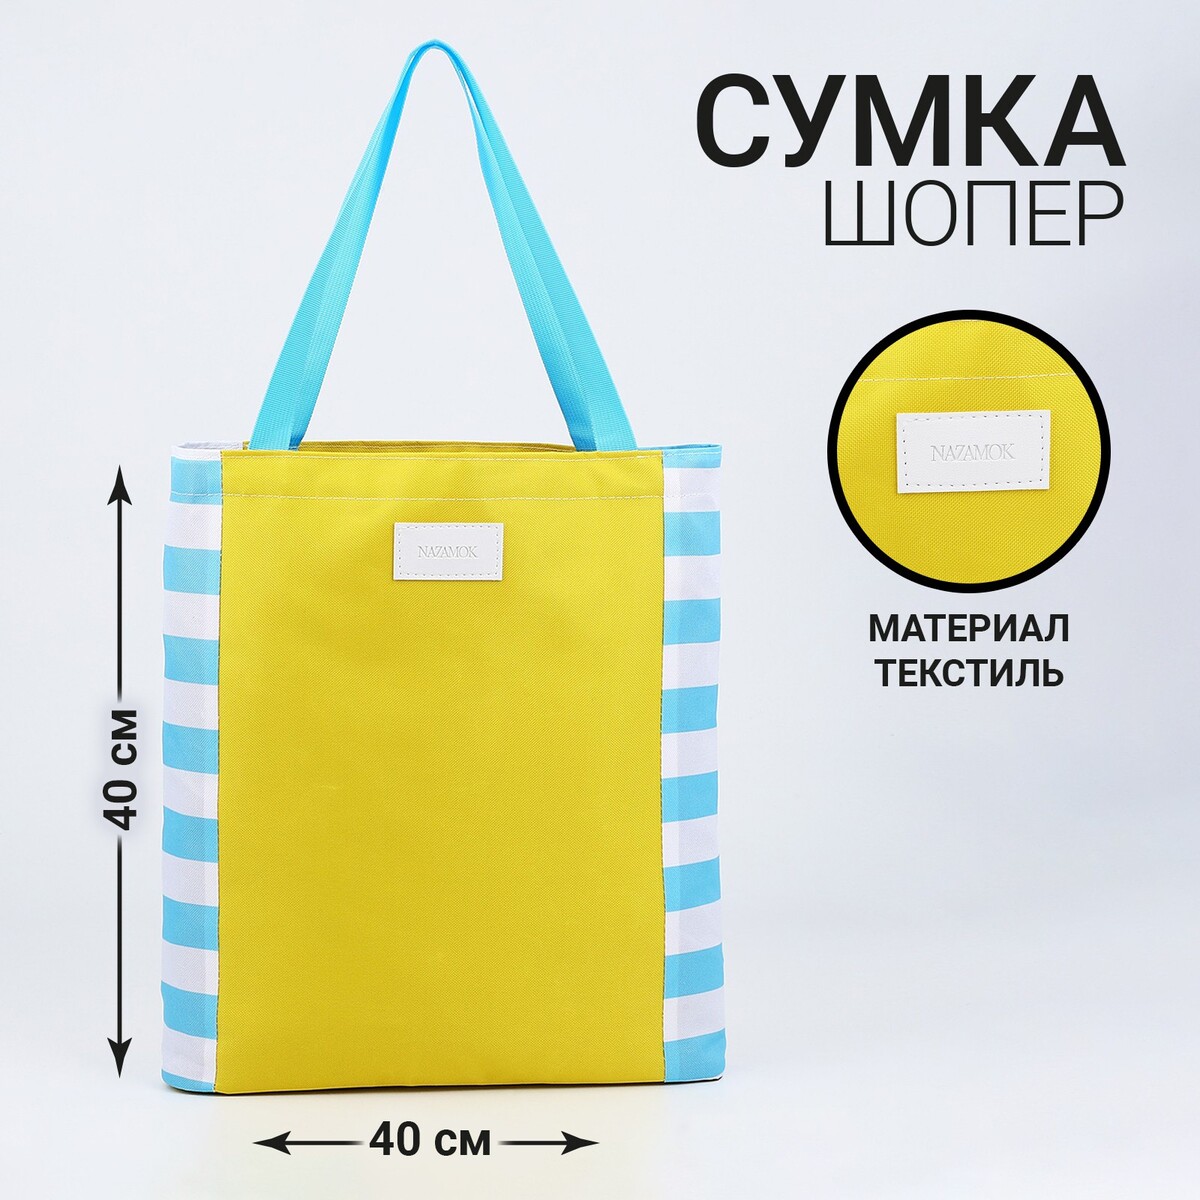 Сумка женская пляжная nazamok, 40х40см, желтый цвет сумка женская пляжная